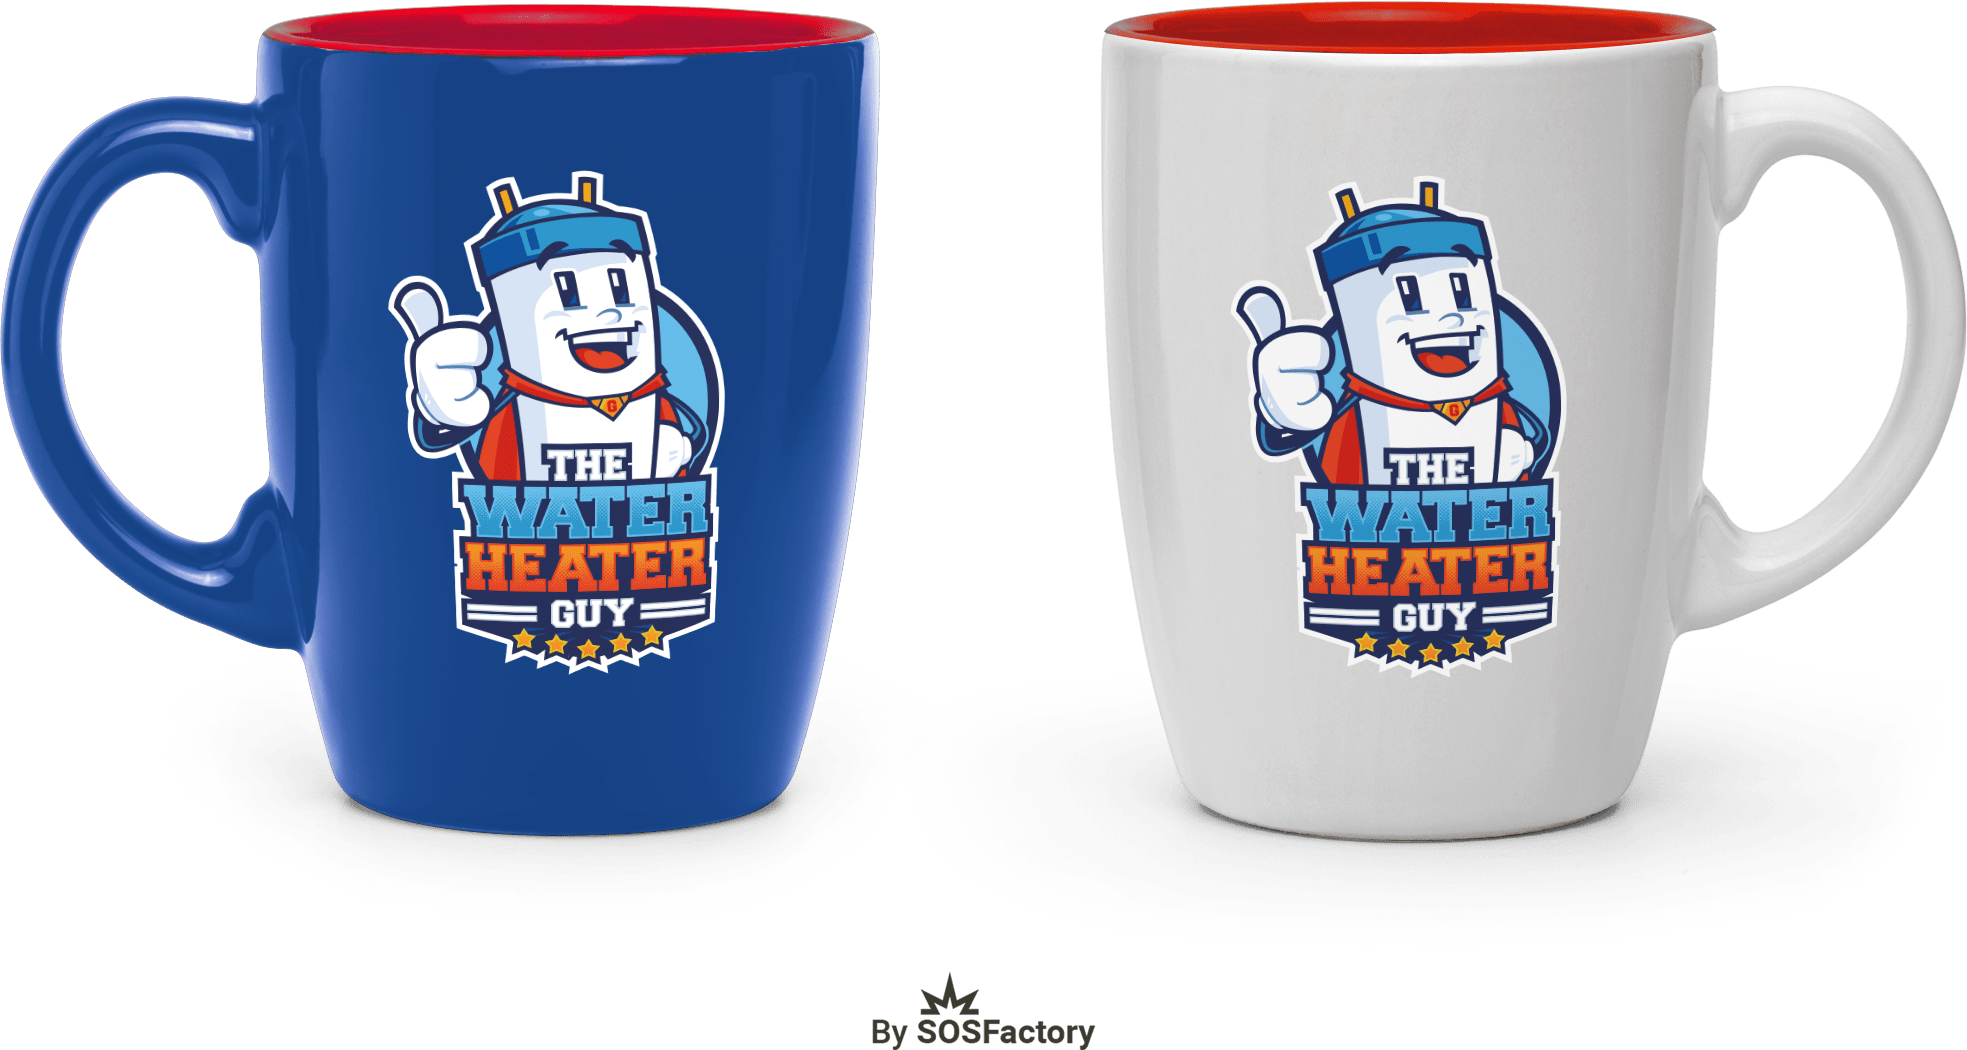 Rebranded mugs